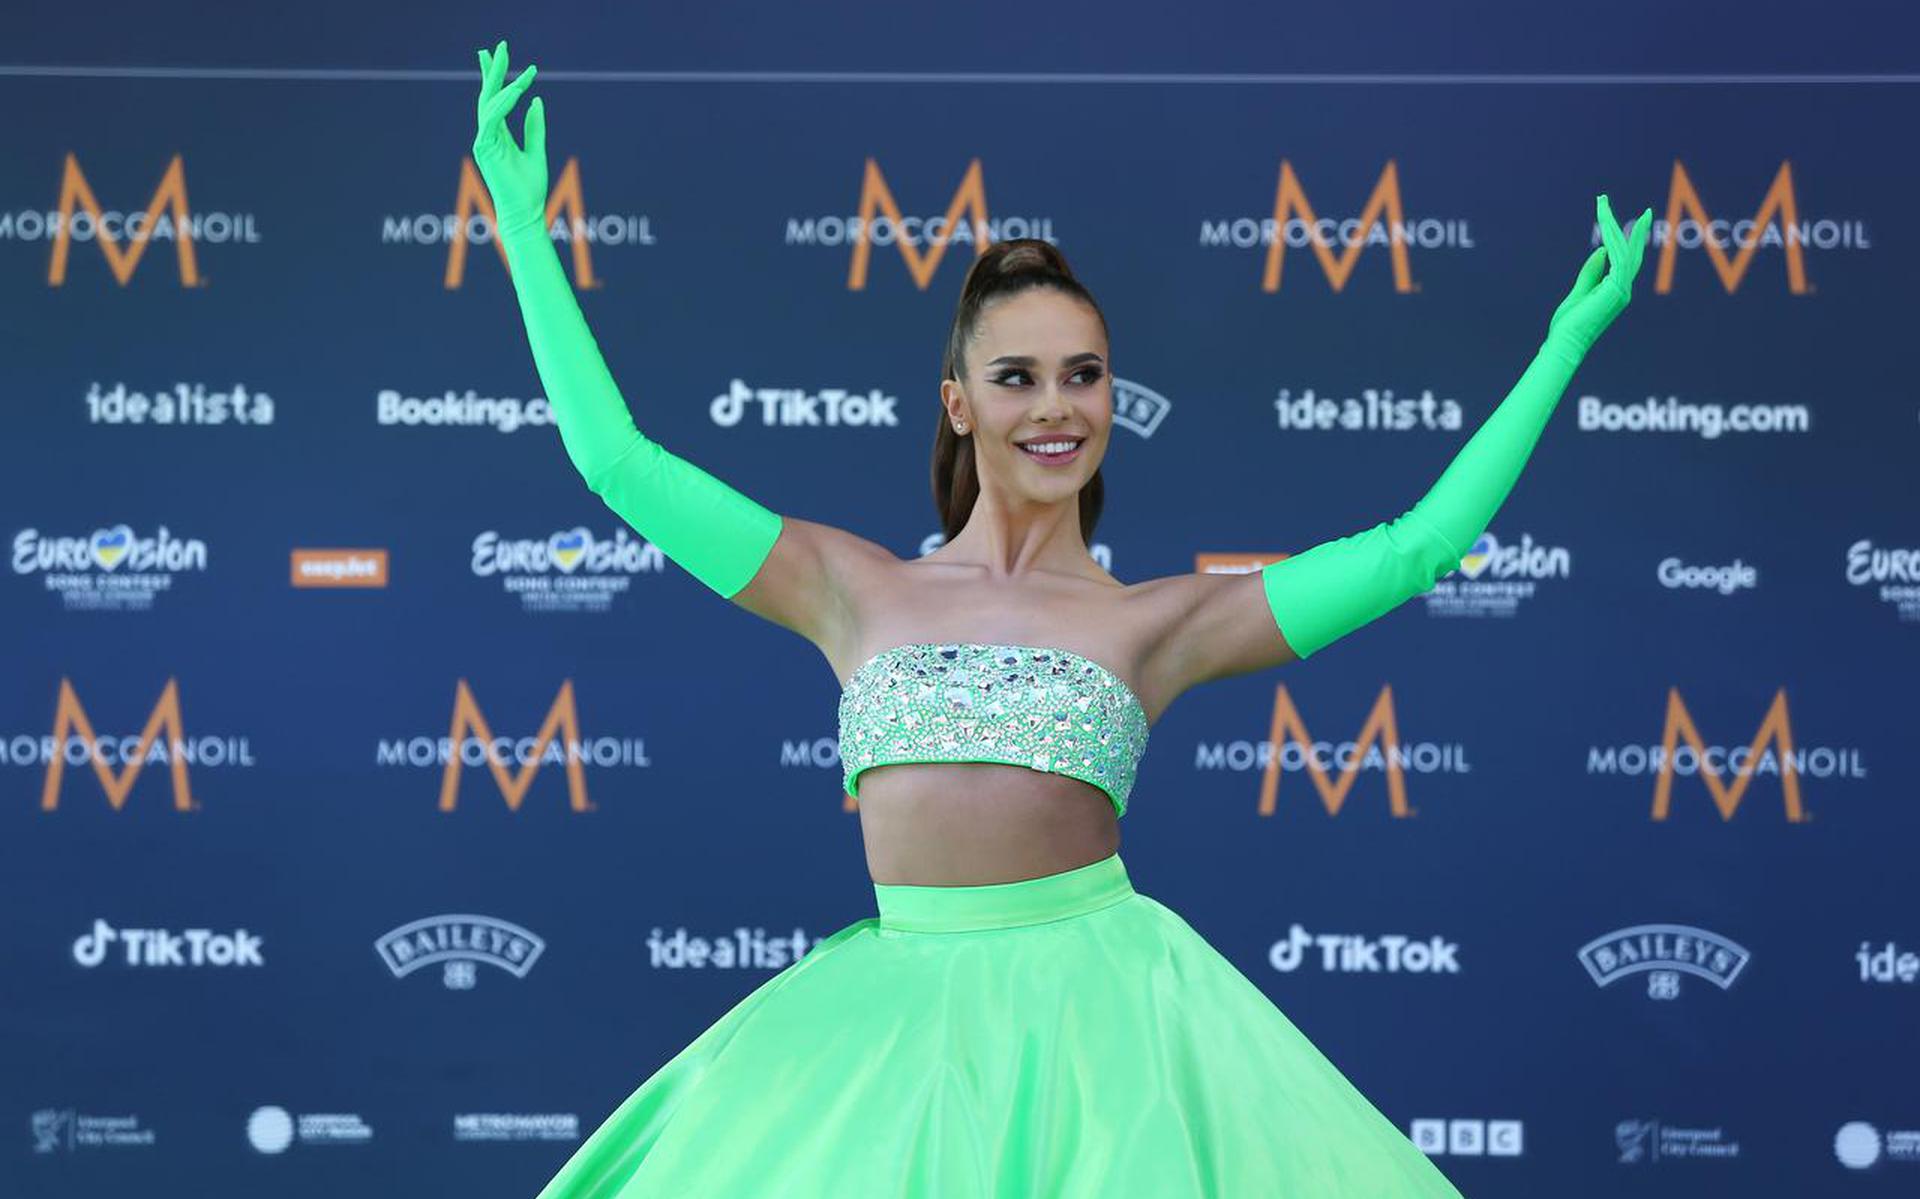 De keuze voor zangeres Blanka als inzending namens Polen voor het Eurovisie Songfestival heeft voor een controverse gezorgd in het land. 